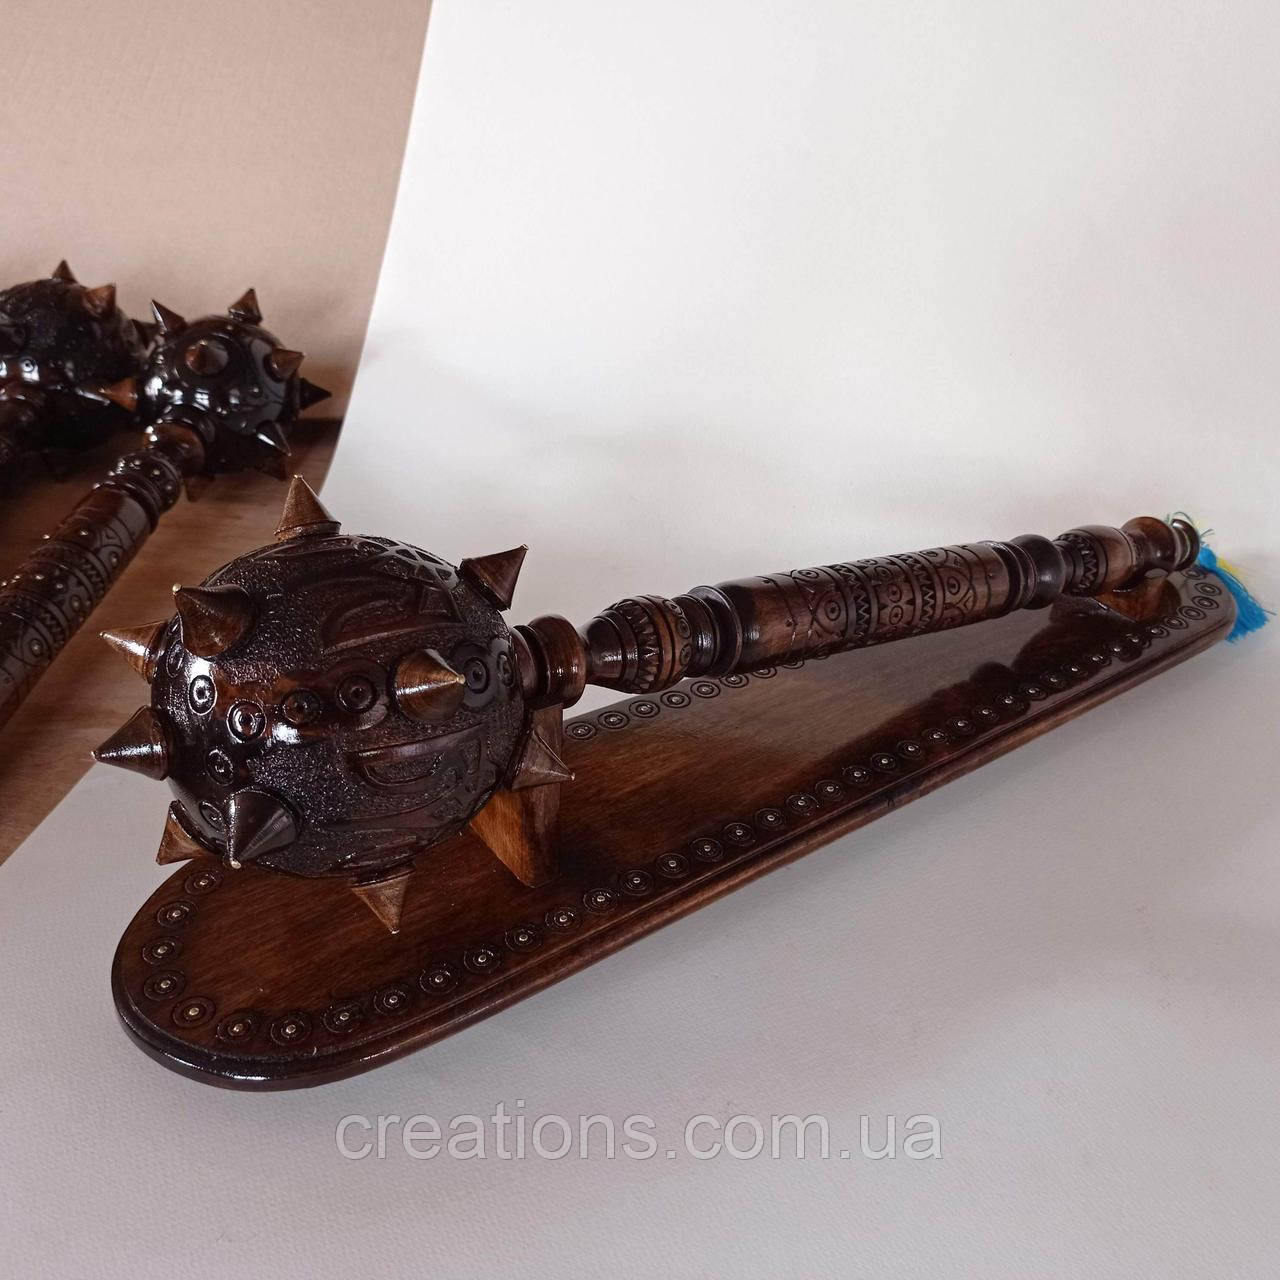 Деревянная резная булава с подставкой 56 см., подарок, сувенир, ручная работа